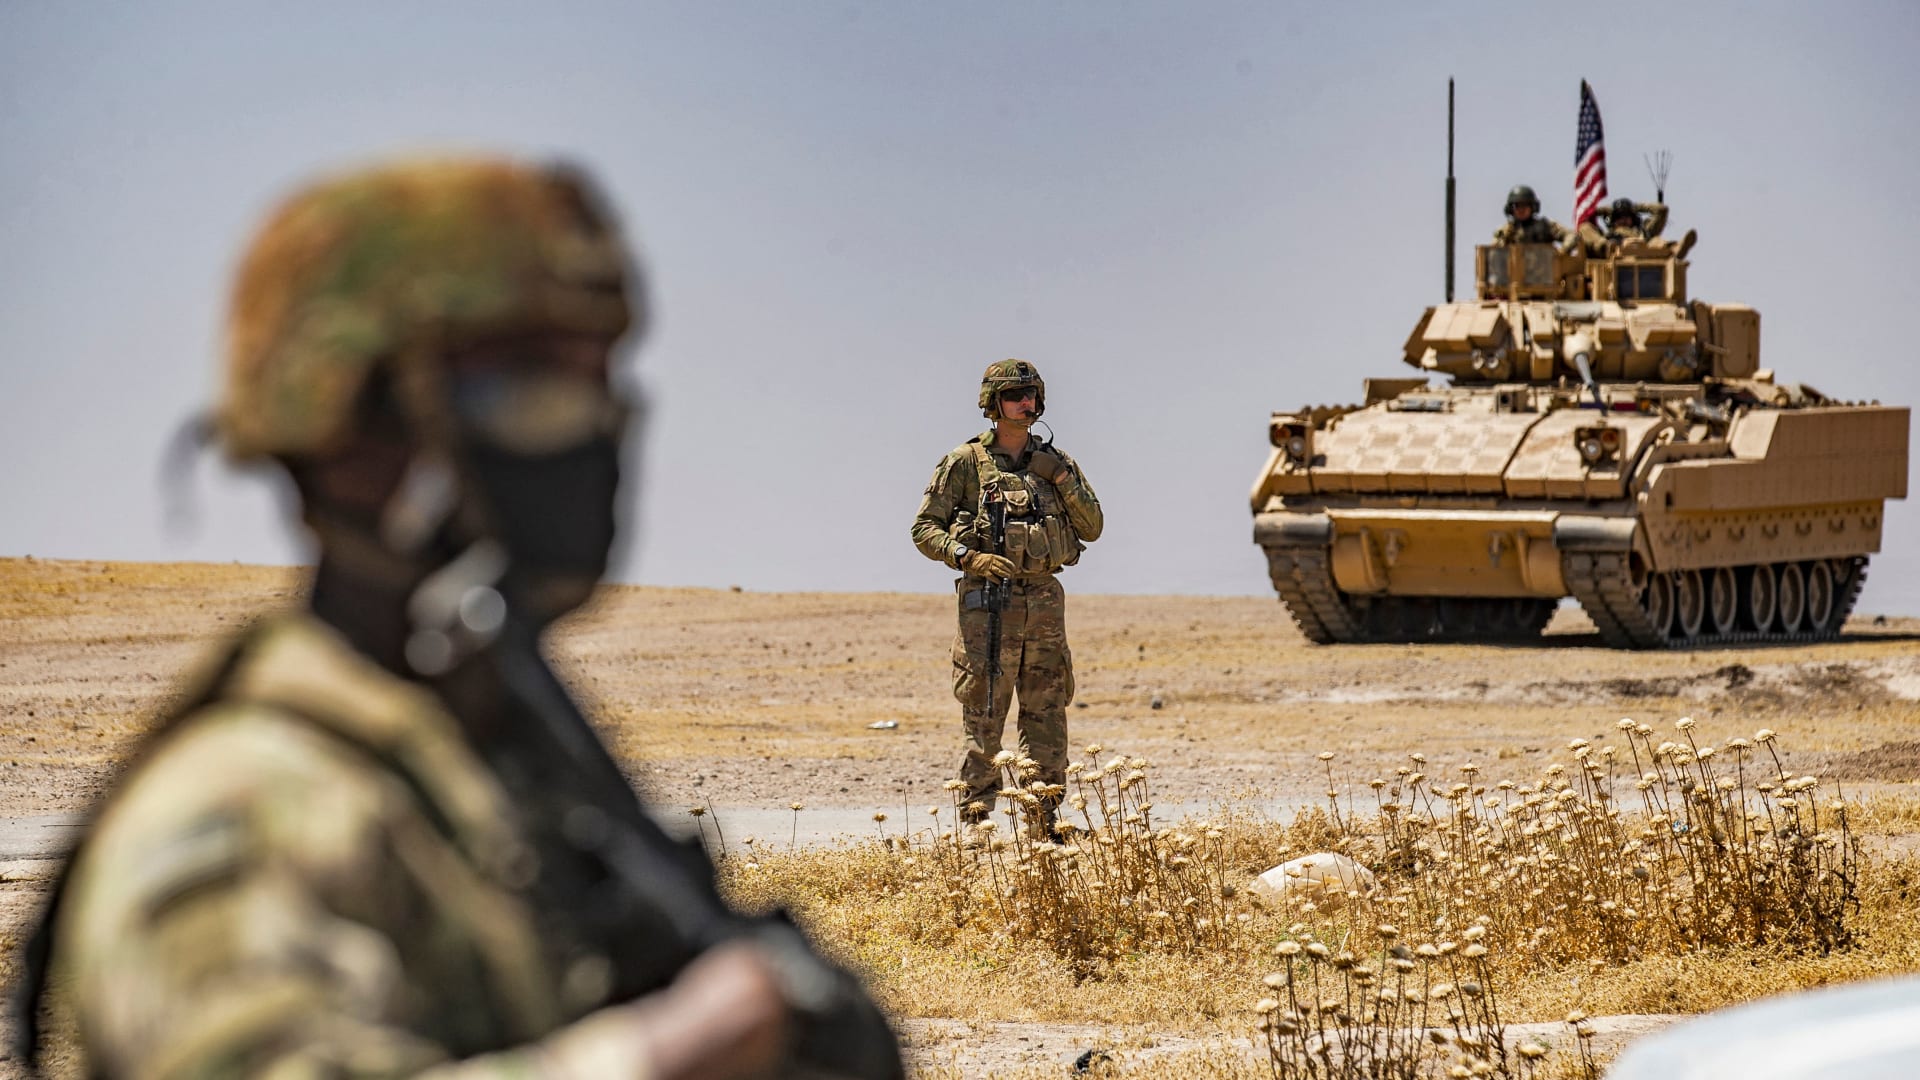 جندي أمريكي يقف بالقرب من مركبة  خلال دورية بالقرب من آبار النفط  بمحافظة الحسكة السورية  